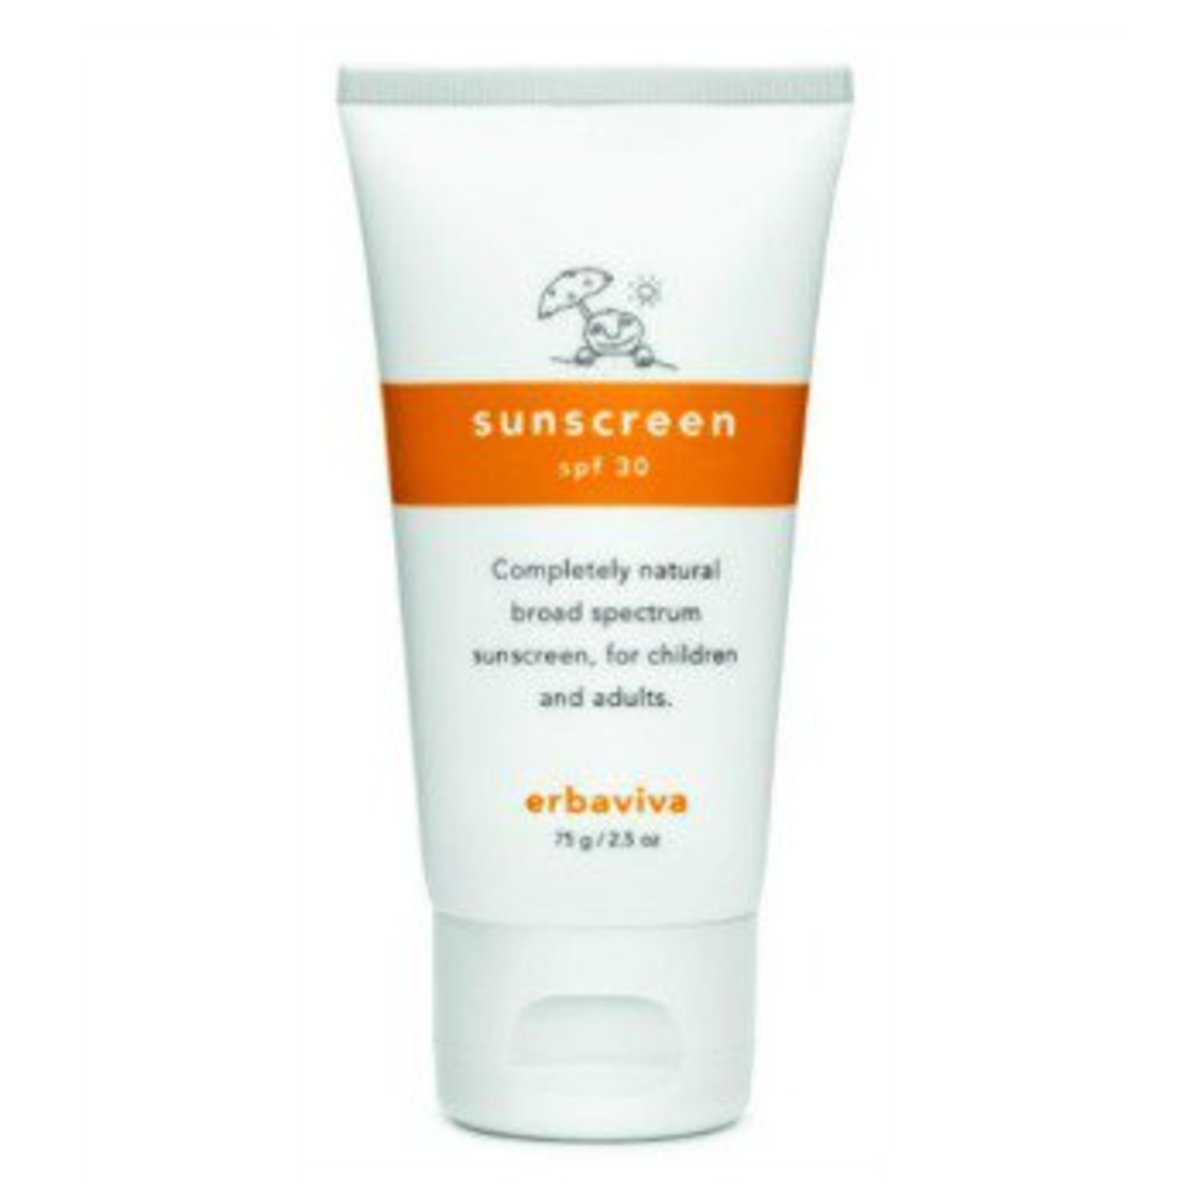 Erbaviva Sunscreen SPF 30